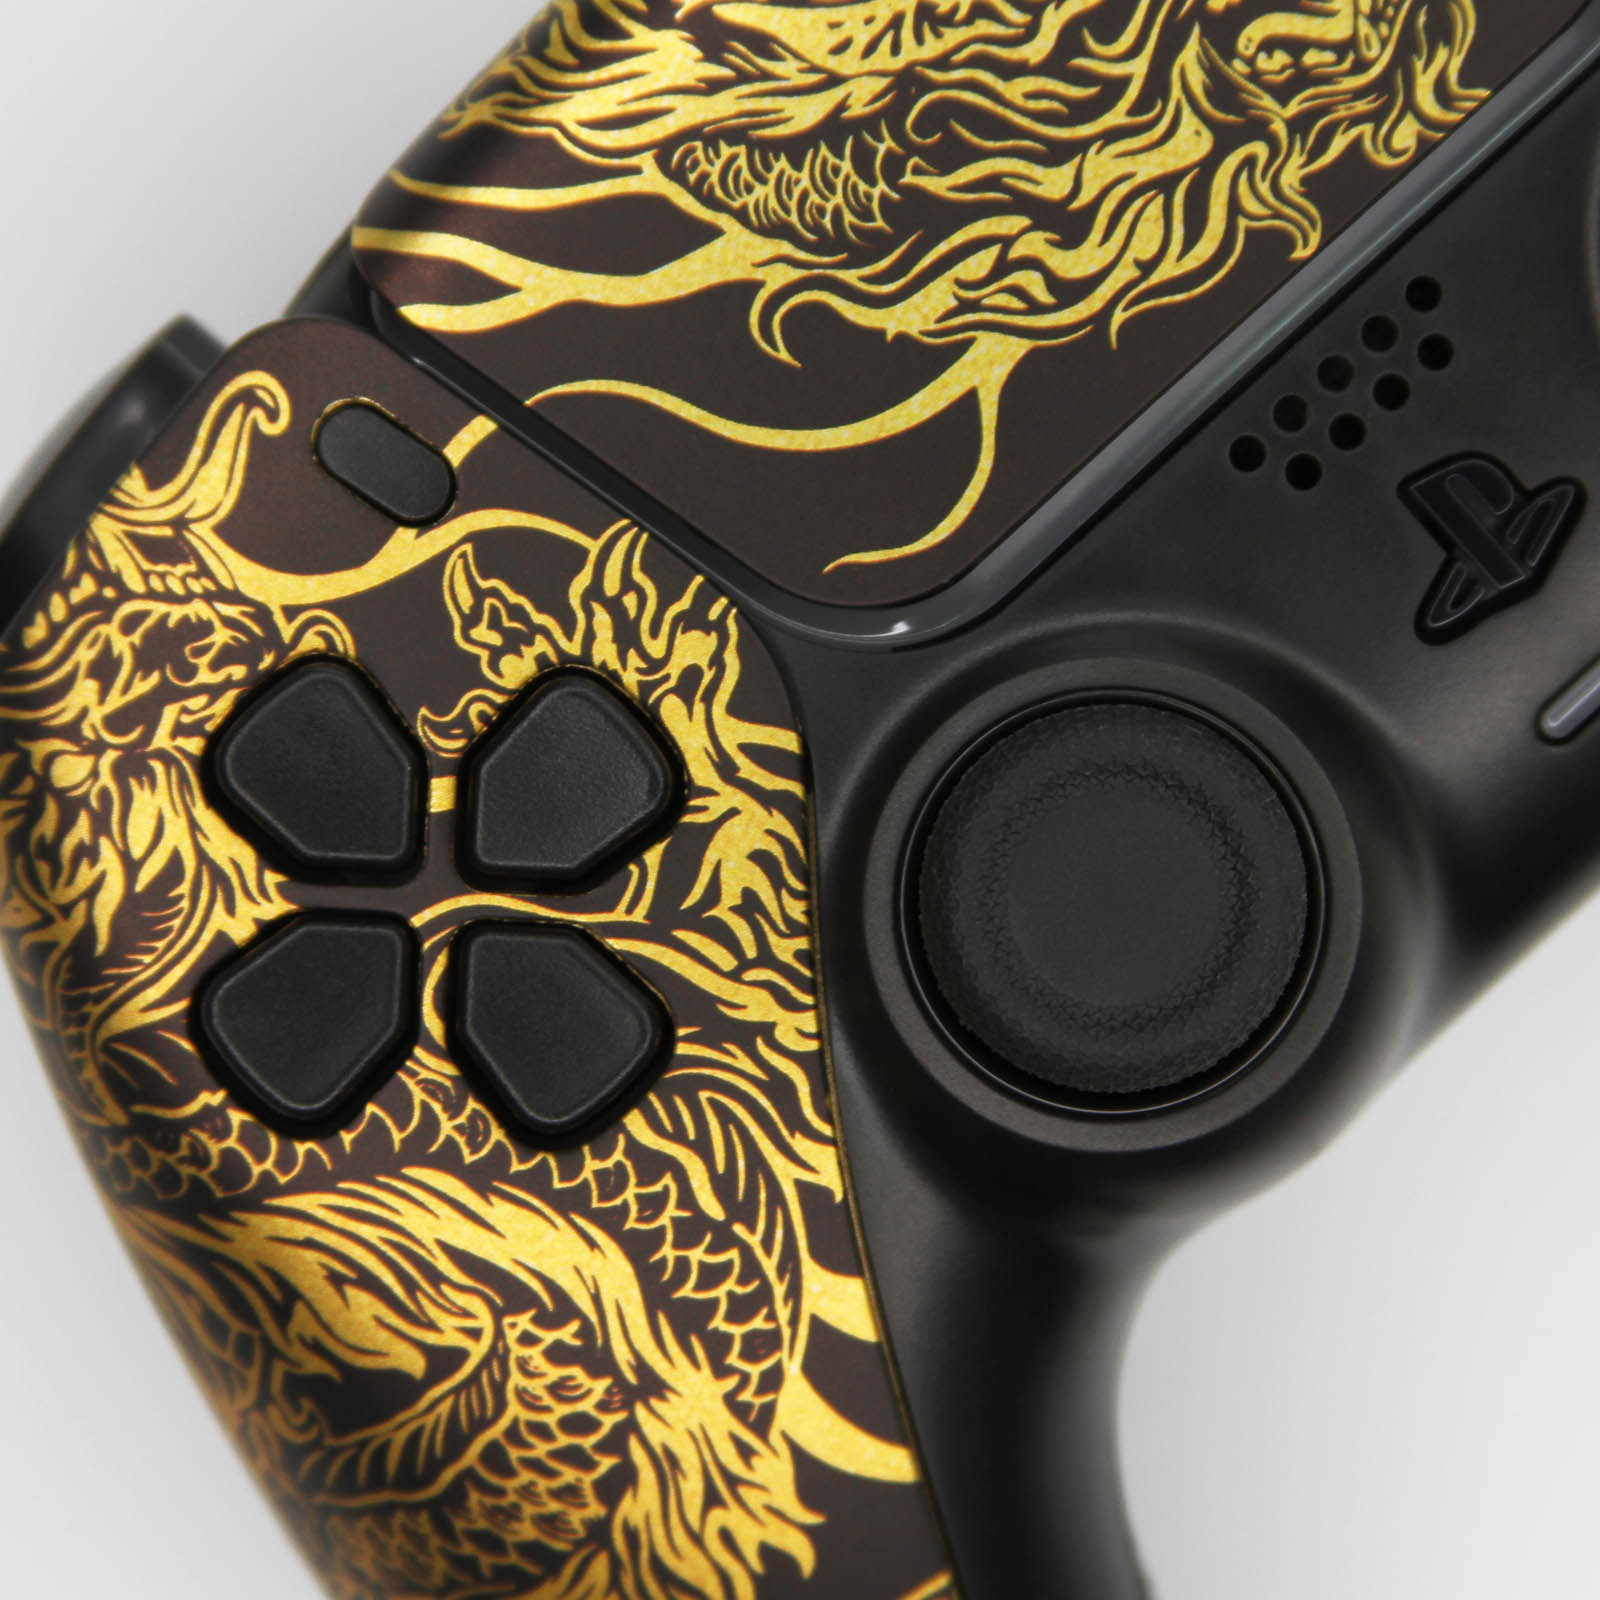 Golden Dragon Sony x Killscreen DualSense PS5 Controller Gold